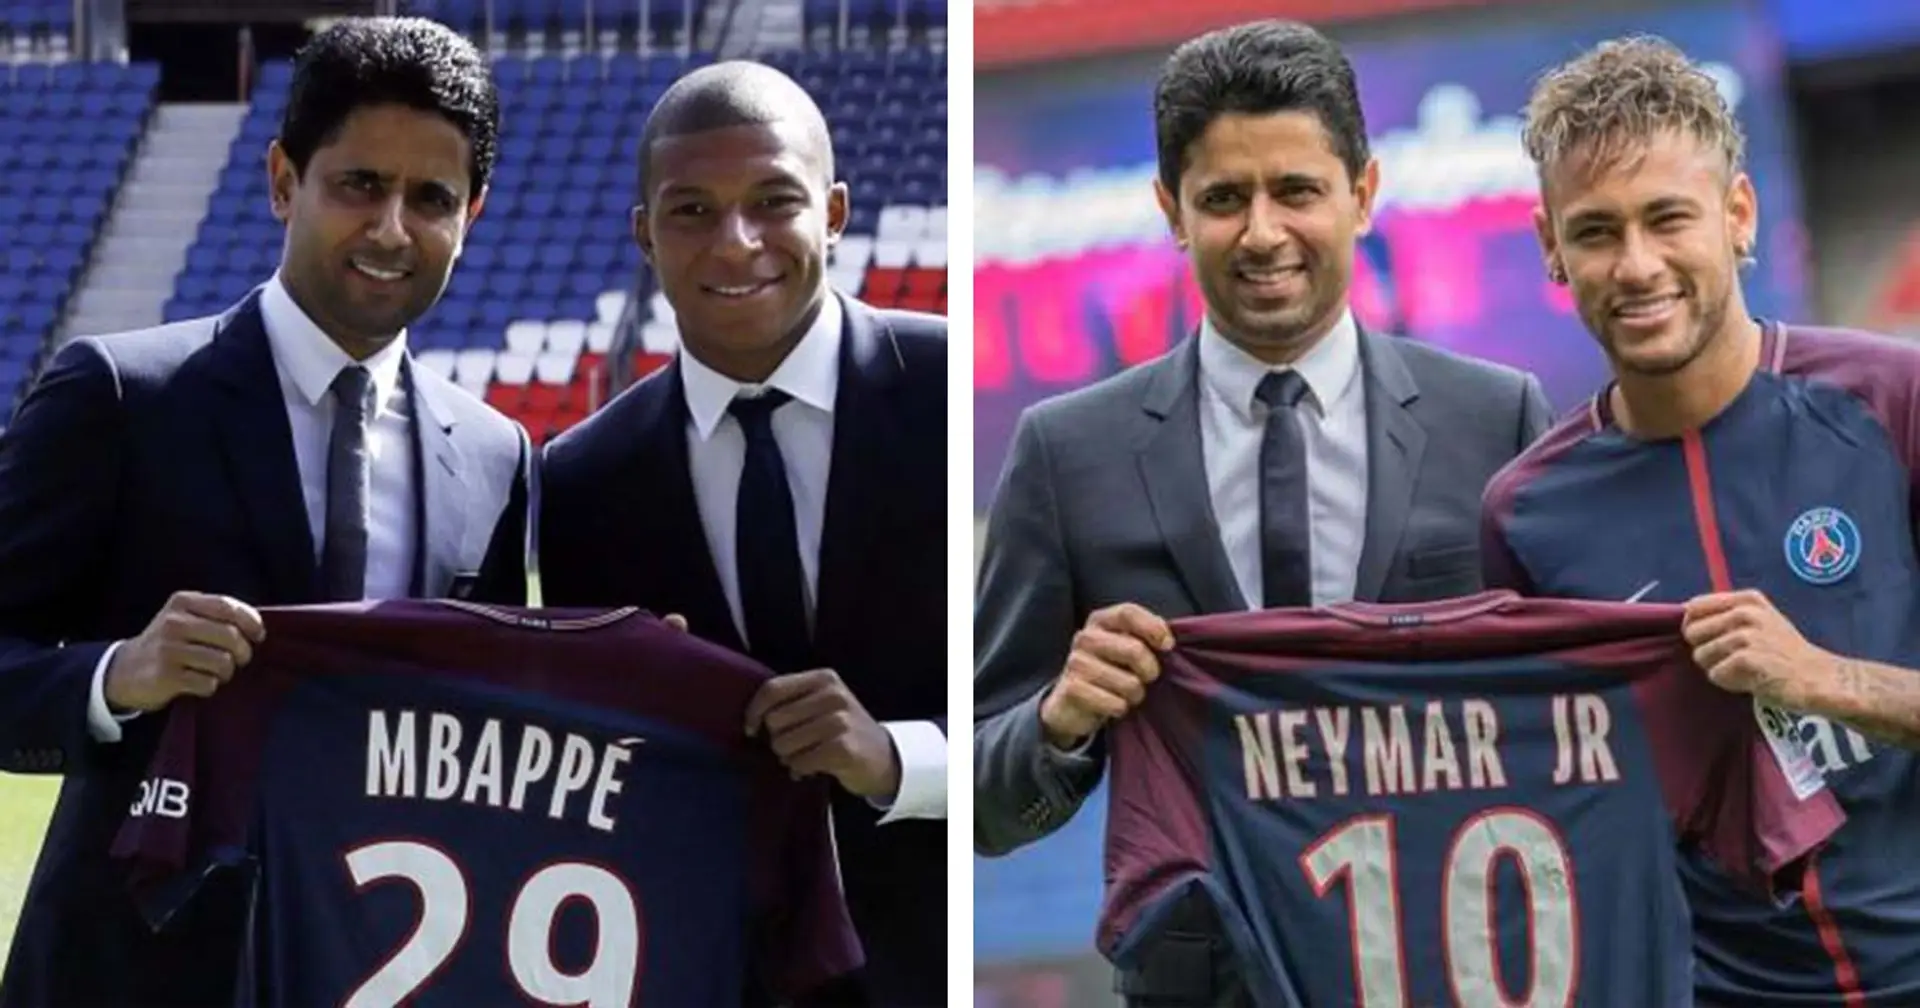 "Signer Neymar et Mbappé c'est bien plus fort", un fan sur Tribuna.com ne considère pas que le mercato actuel du PSG soit exceptionnel